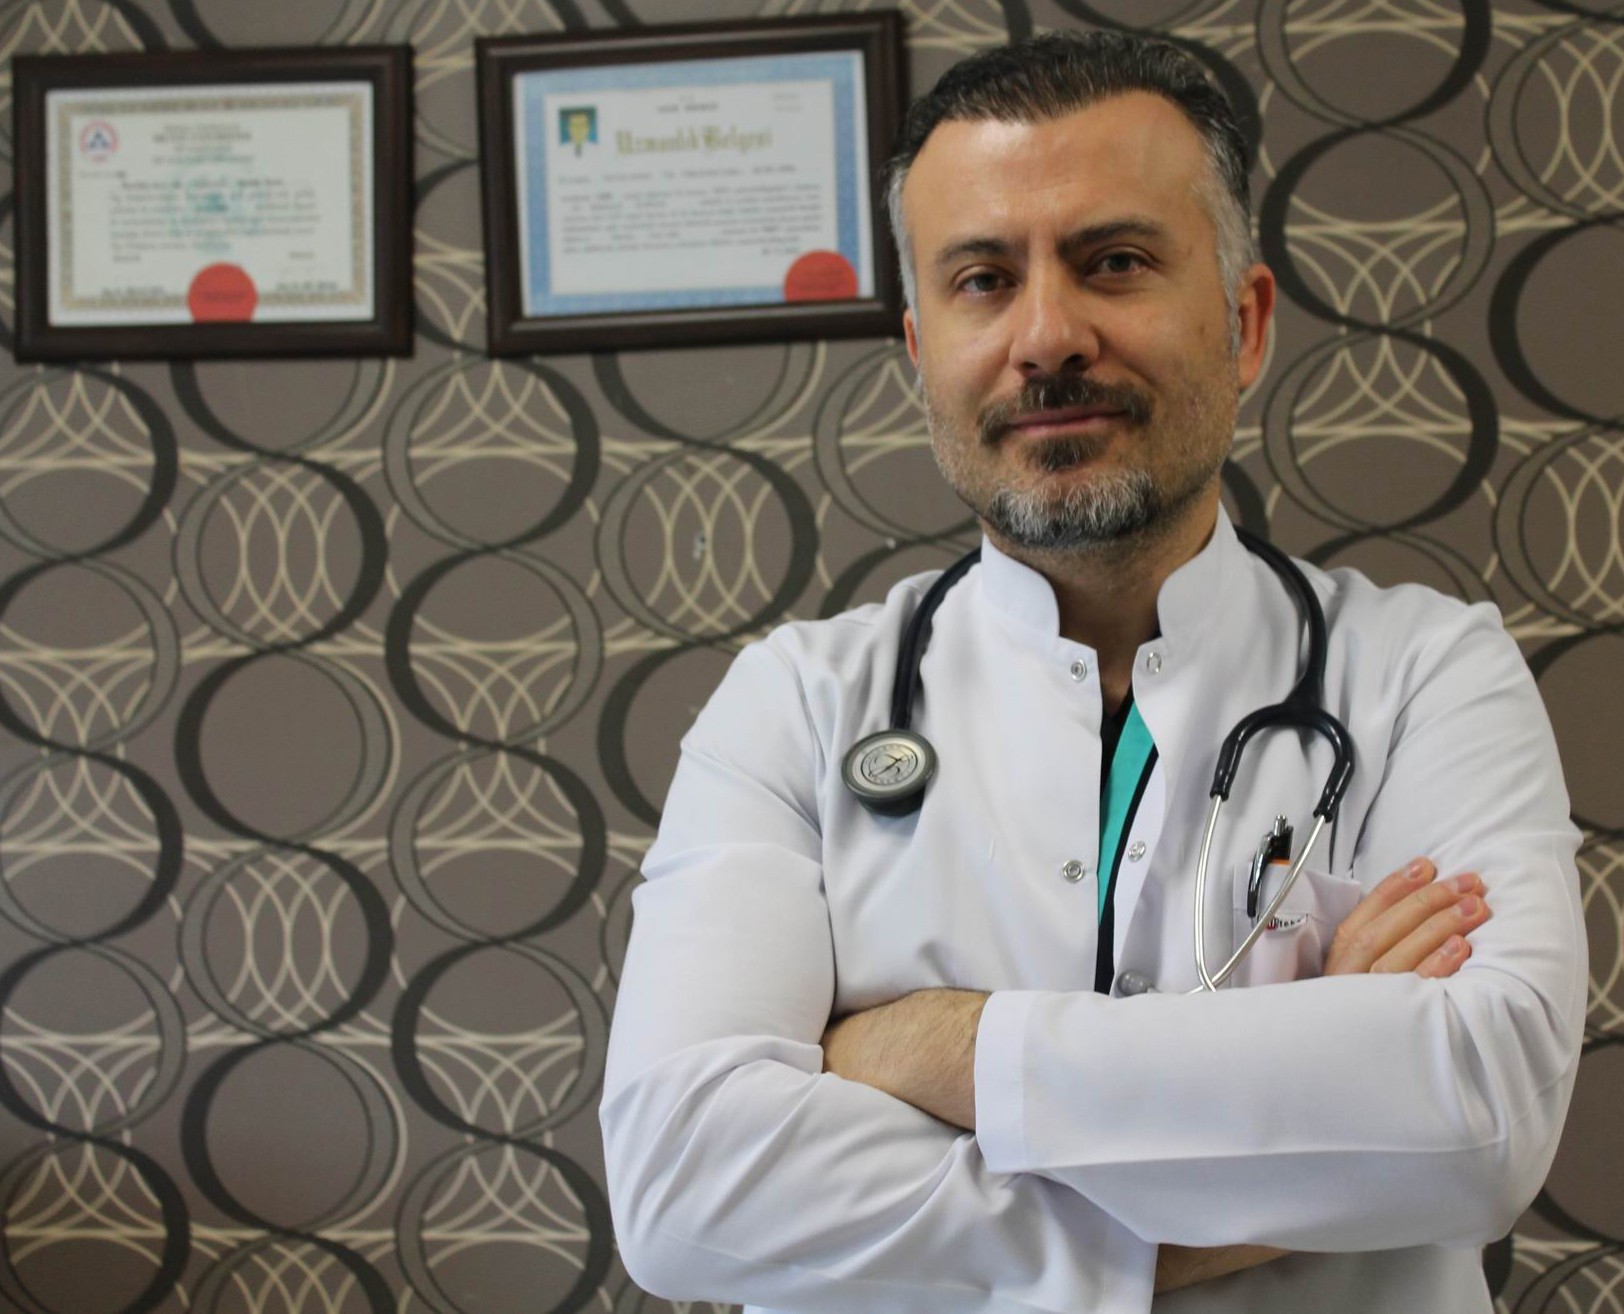 Genel Cerrahi Op. Dr. Duran: “Kanser bıçak vurulunca yayılır bilgisi yanlış”